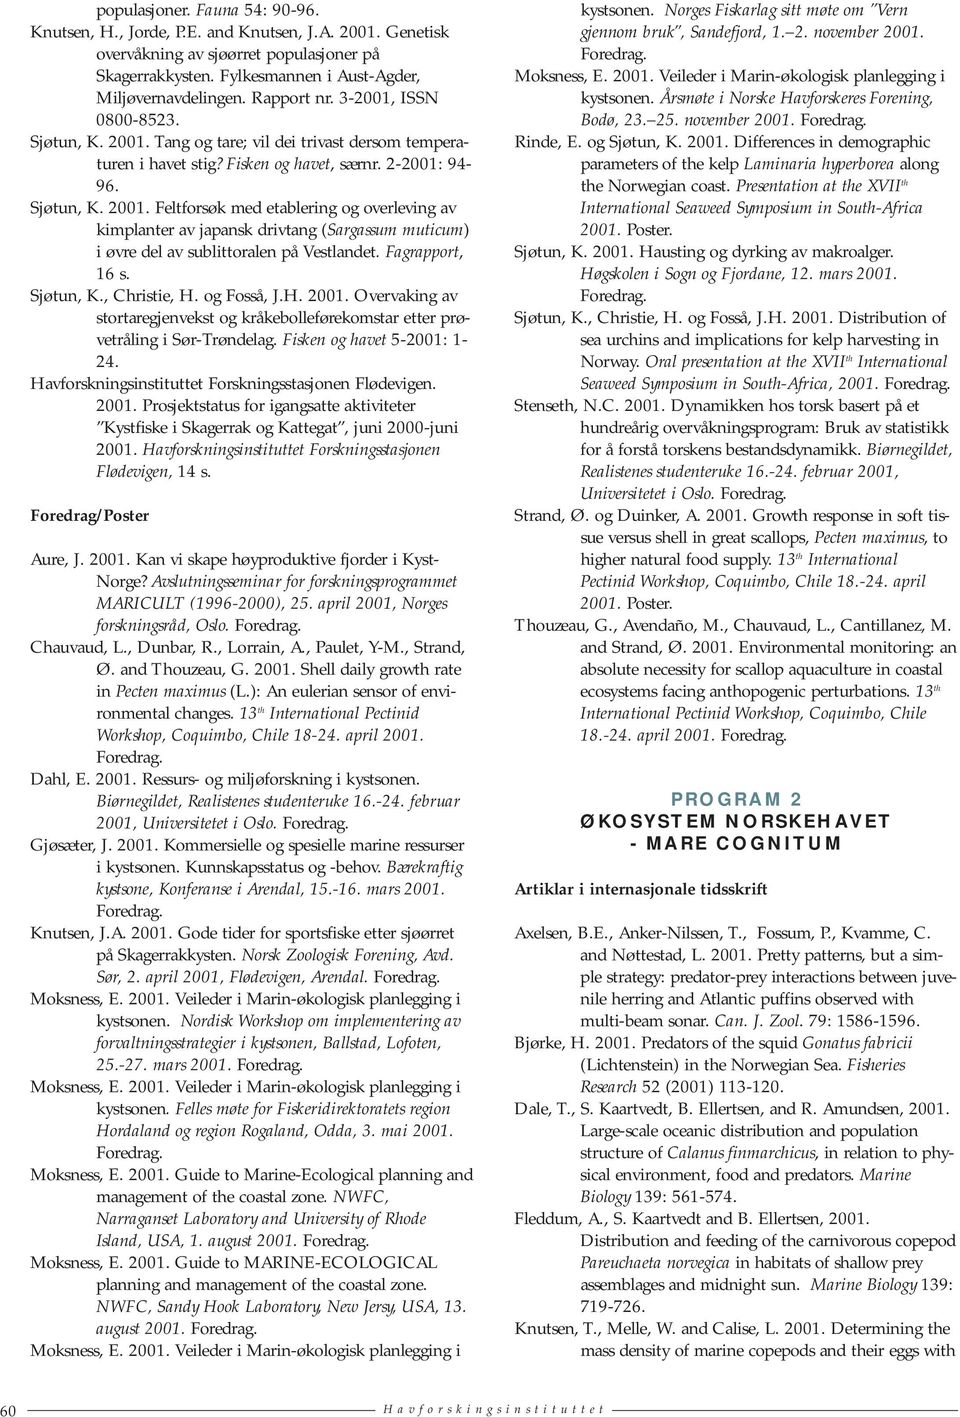 Fagrapport, 16 s. Sjøtun, K., Christie, H. og Fosså, J.H. Overvaking av stortaregjenvekst og kråkebolleførekomstar etter prøvetråling i Sør-Trøndelag. Fisken og havet 5-2001: 1-24.